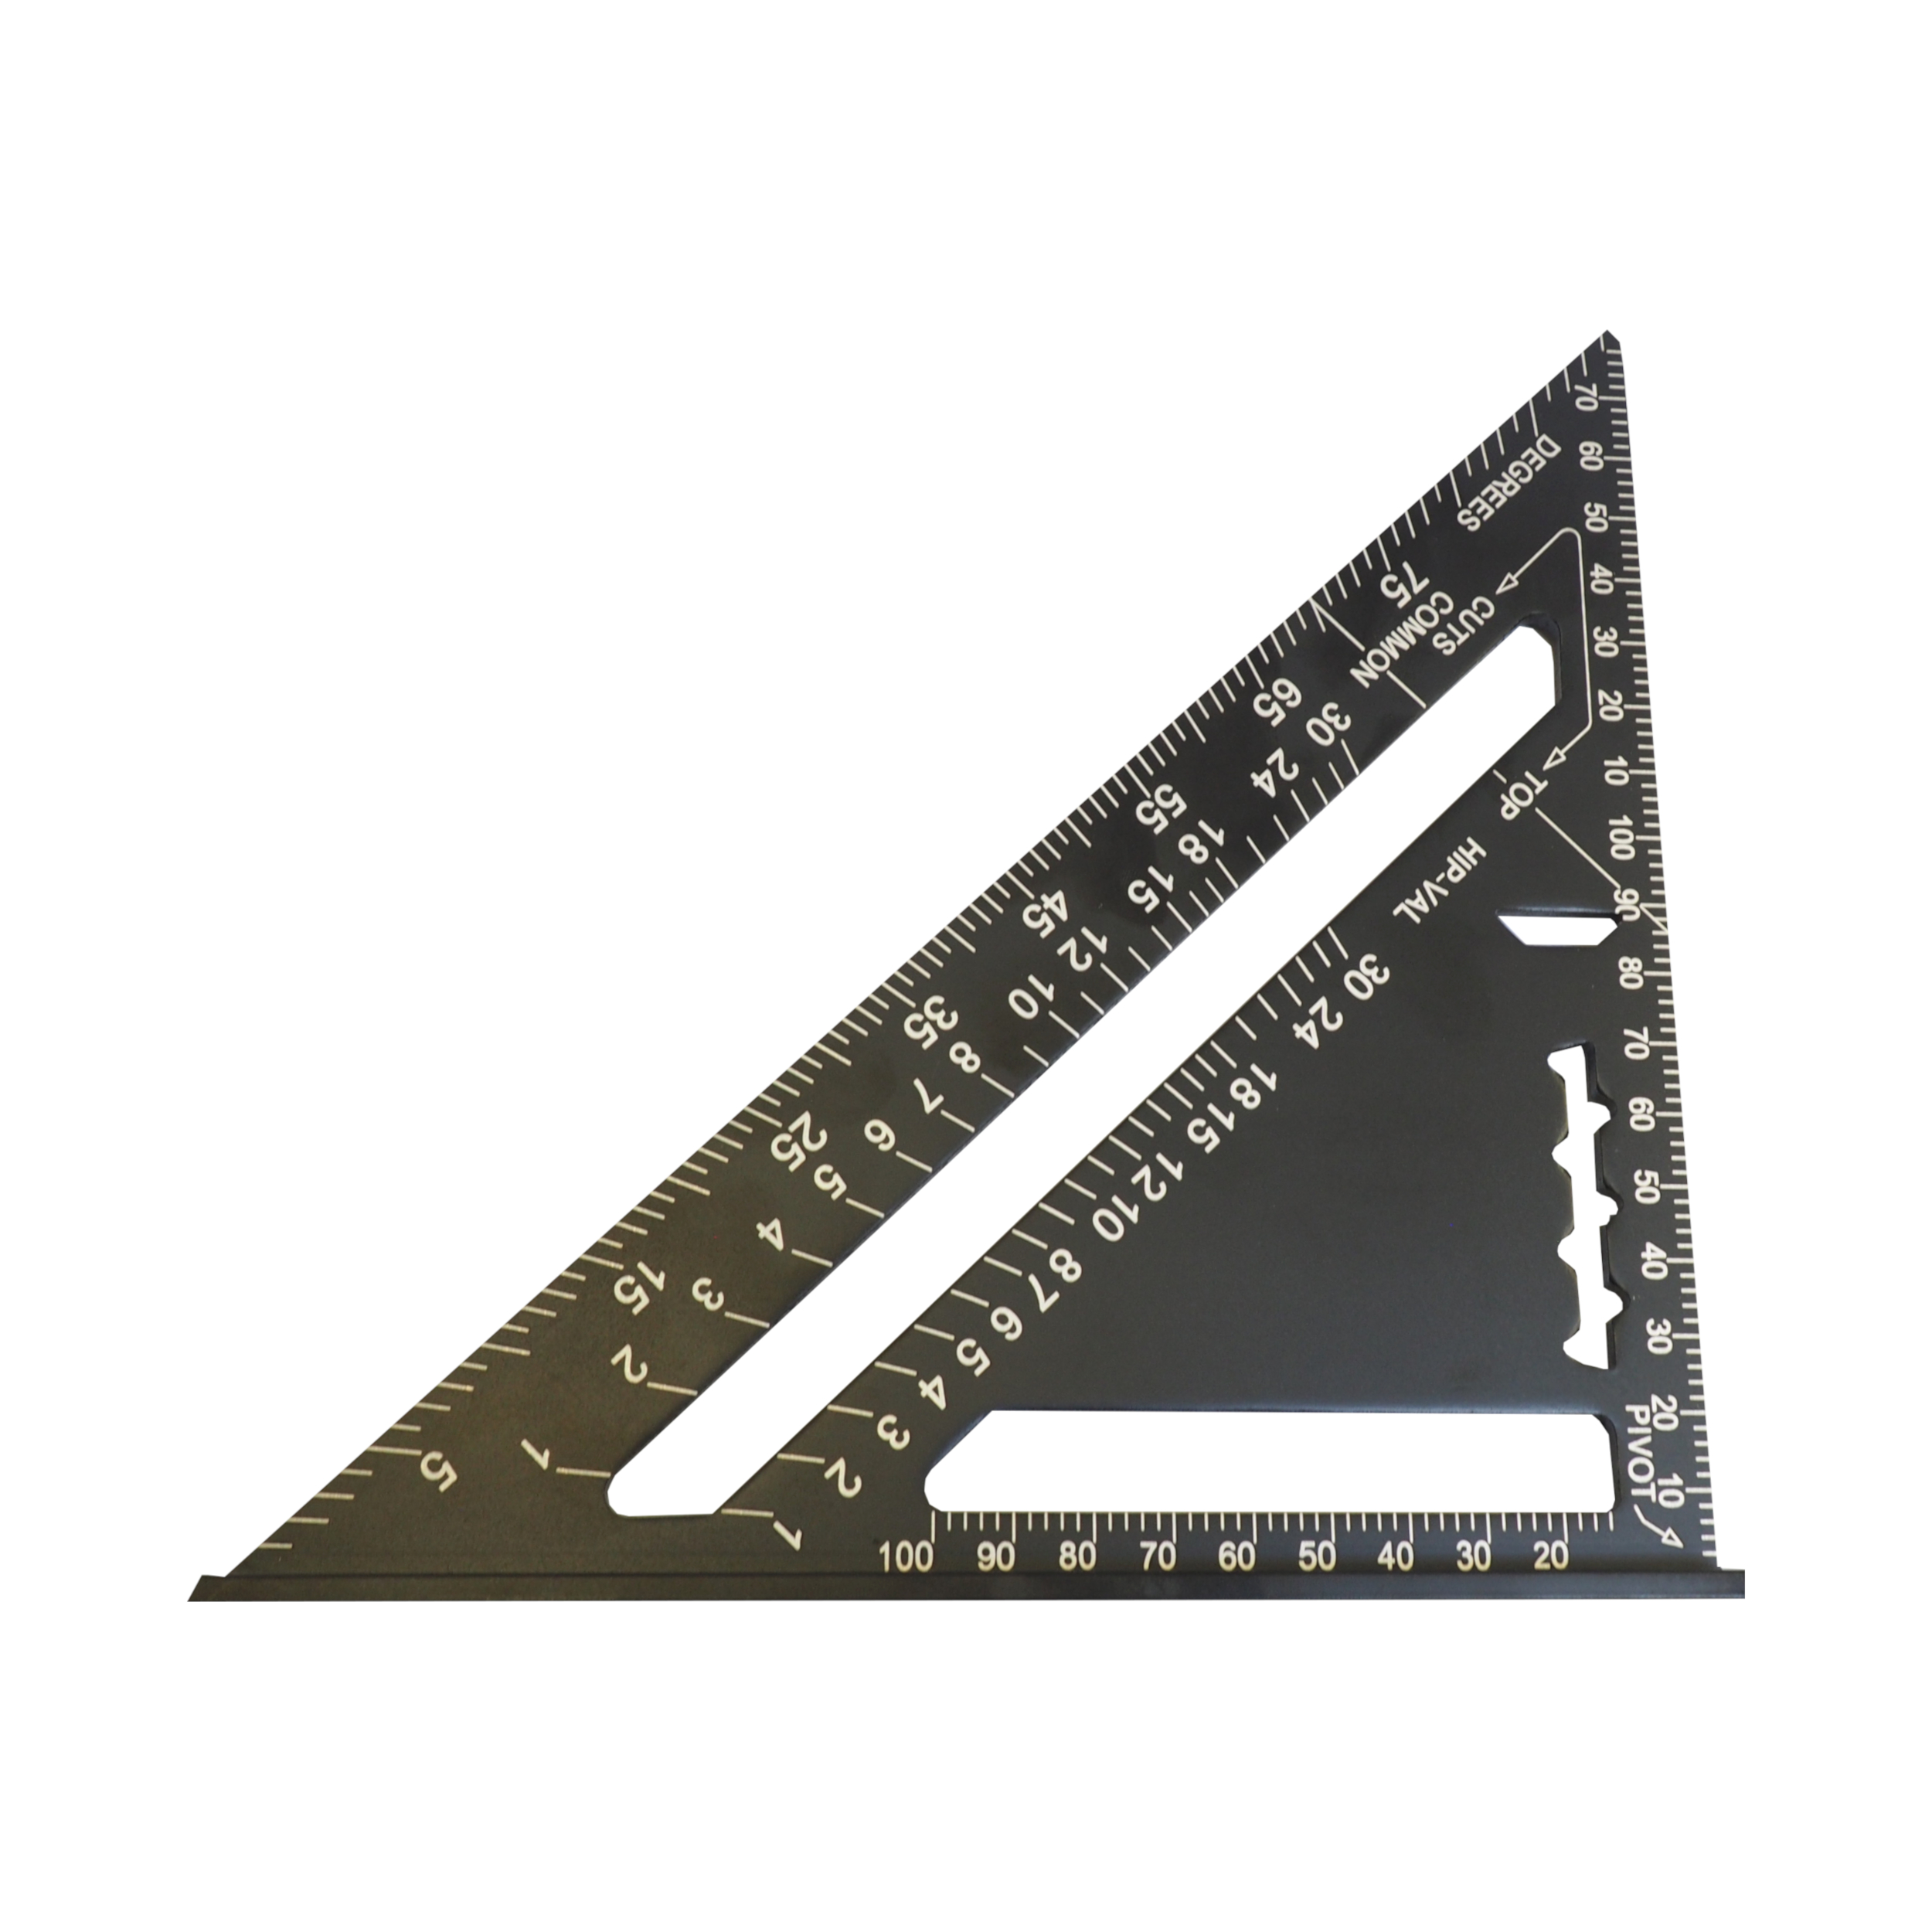 TOPTRADE trojúhelník tesařský, hliníkový, 180 mm 0.19 Kg TOP Sklad4 105157 874